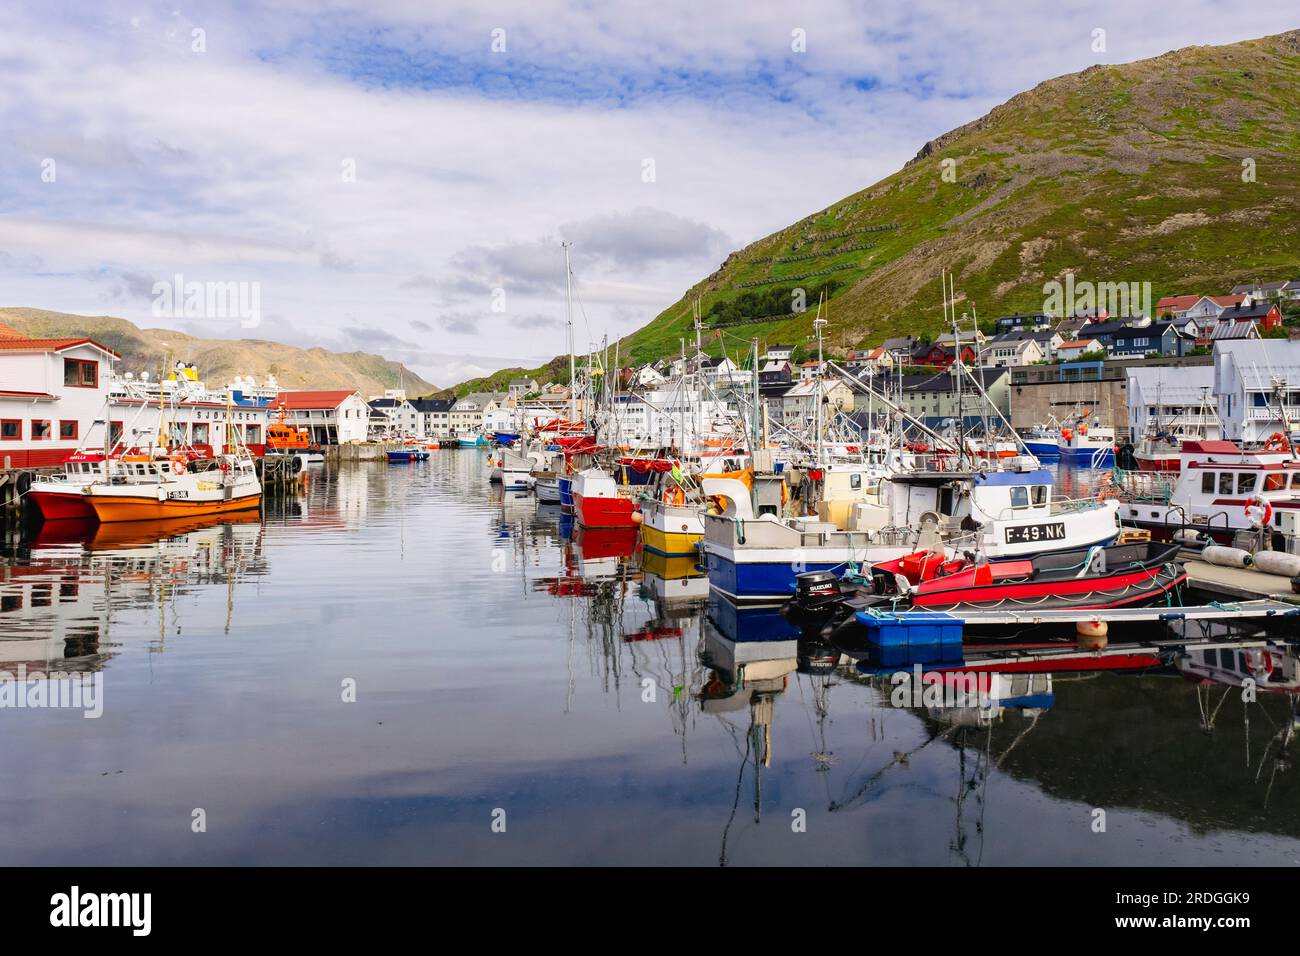 Barche da pesca nel porto della città più settentrionale della terraferma. Honningsvar, Troms og Finnmark, Norvegia, Scandinavia, Europa Foto Stock